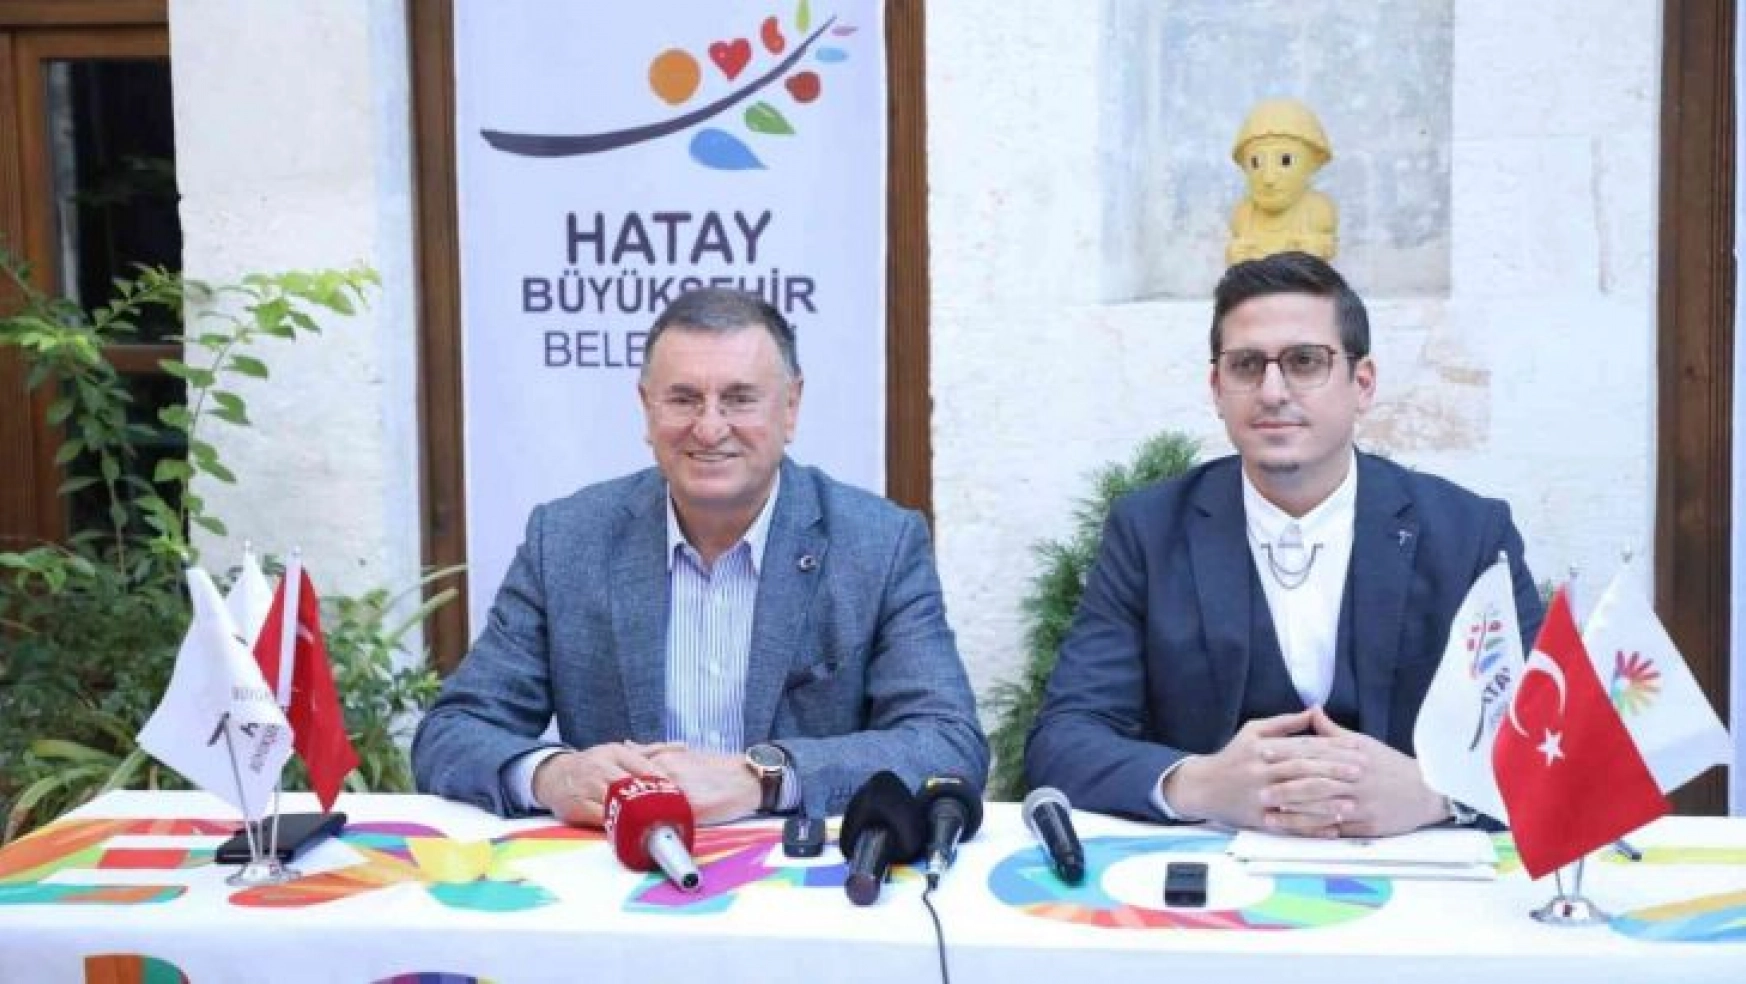 Hatay Büyükşehir Belediyesi, World17 Group'la işbirliği anlaşması yaptı